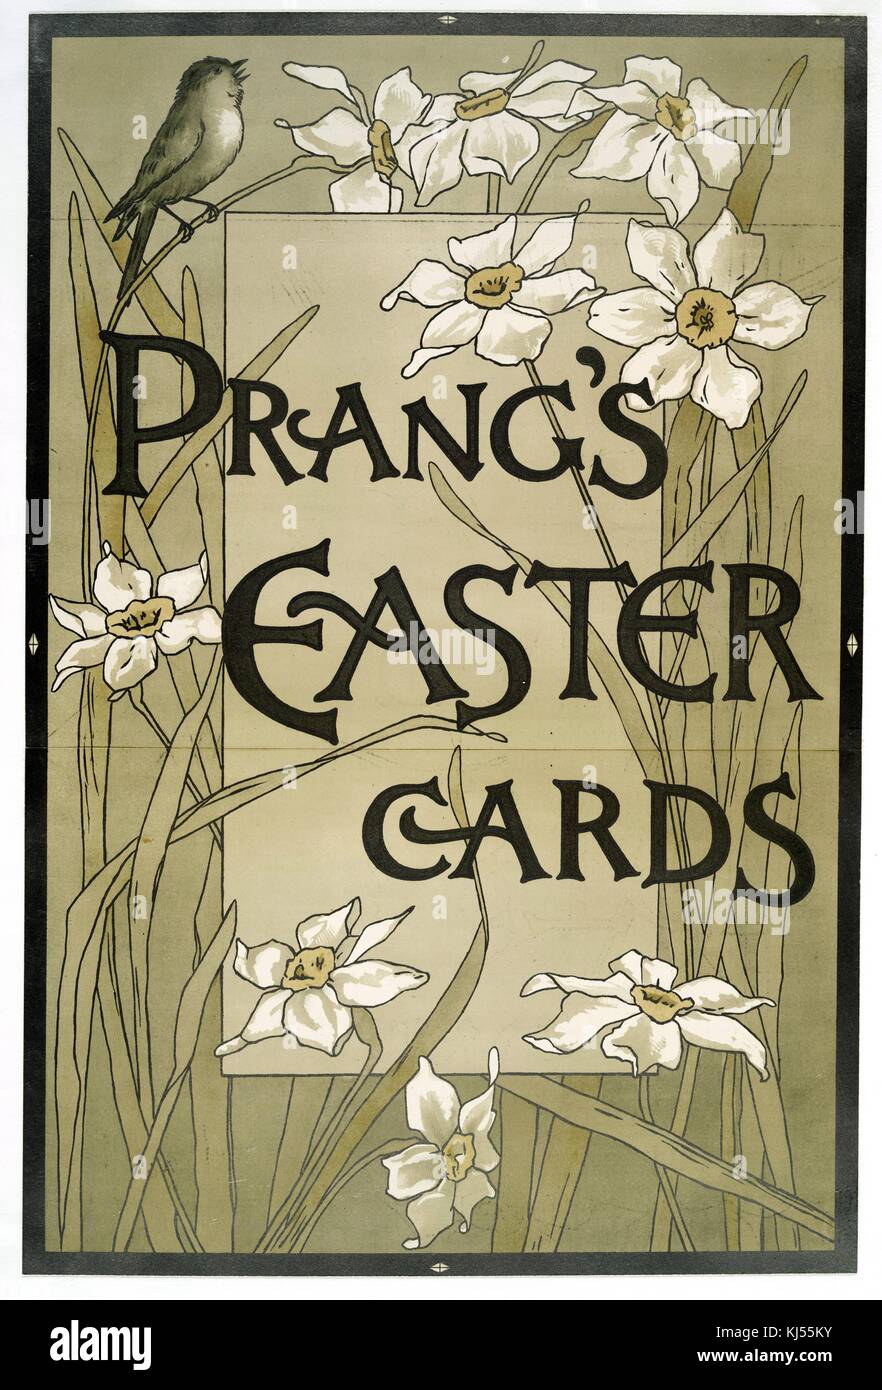 Chromolithograph poster pubblicità con le parole 'Prang's Easter Cards', raffigurante fiori bianchi e un uccello cinguettio in alto, 1900. Dalla Biblioteca pubblica di New York. Foto Stock